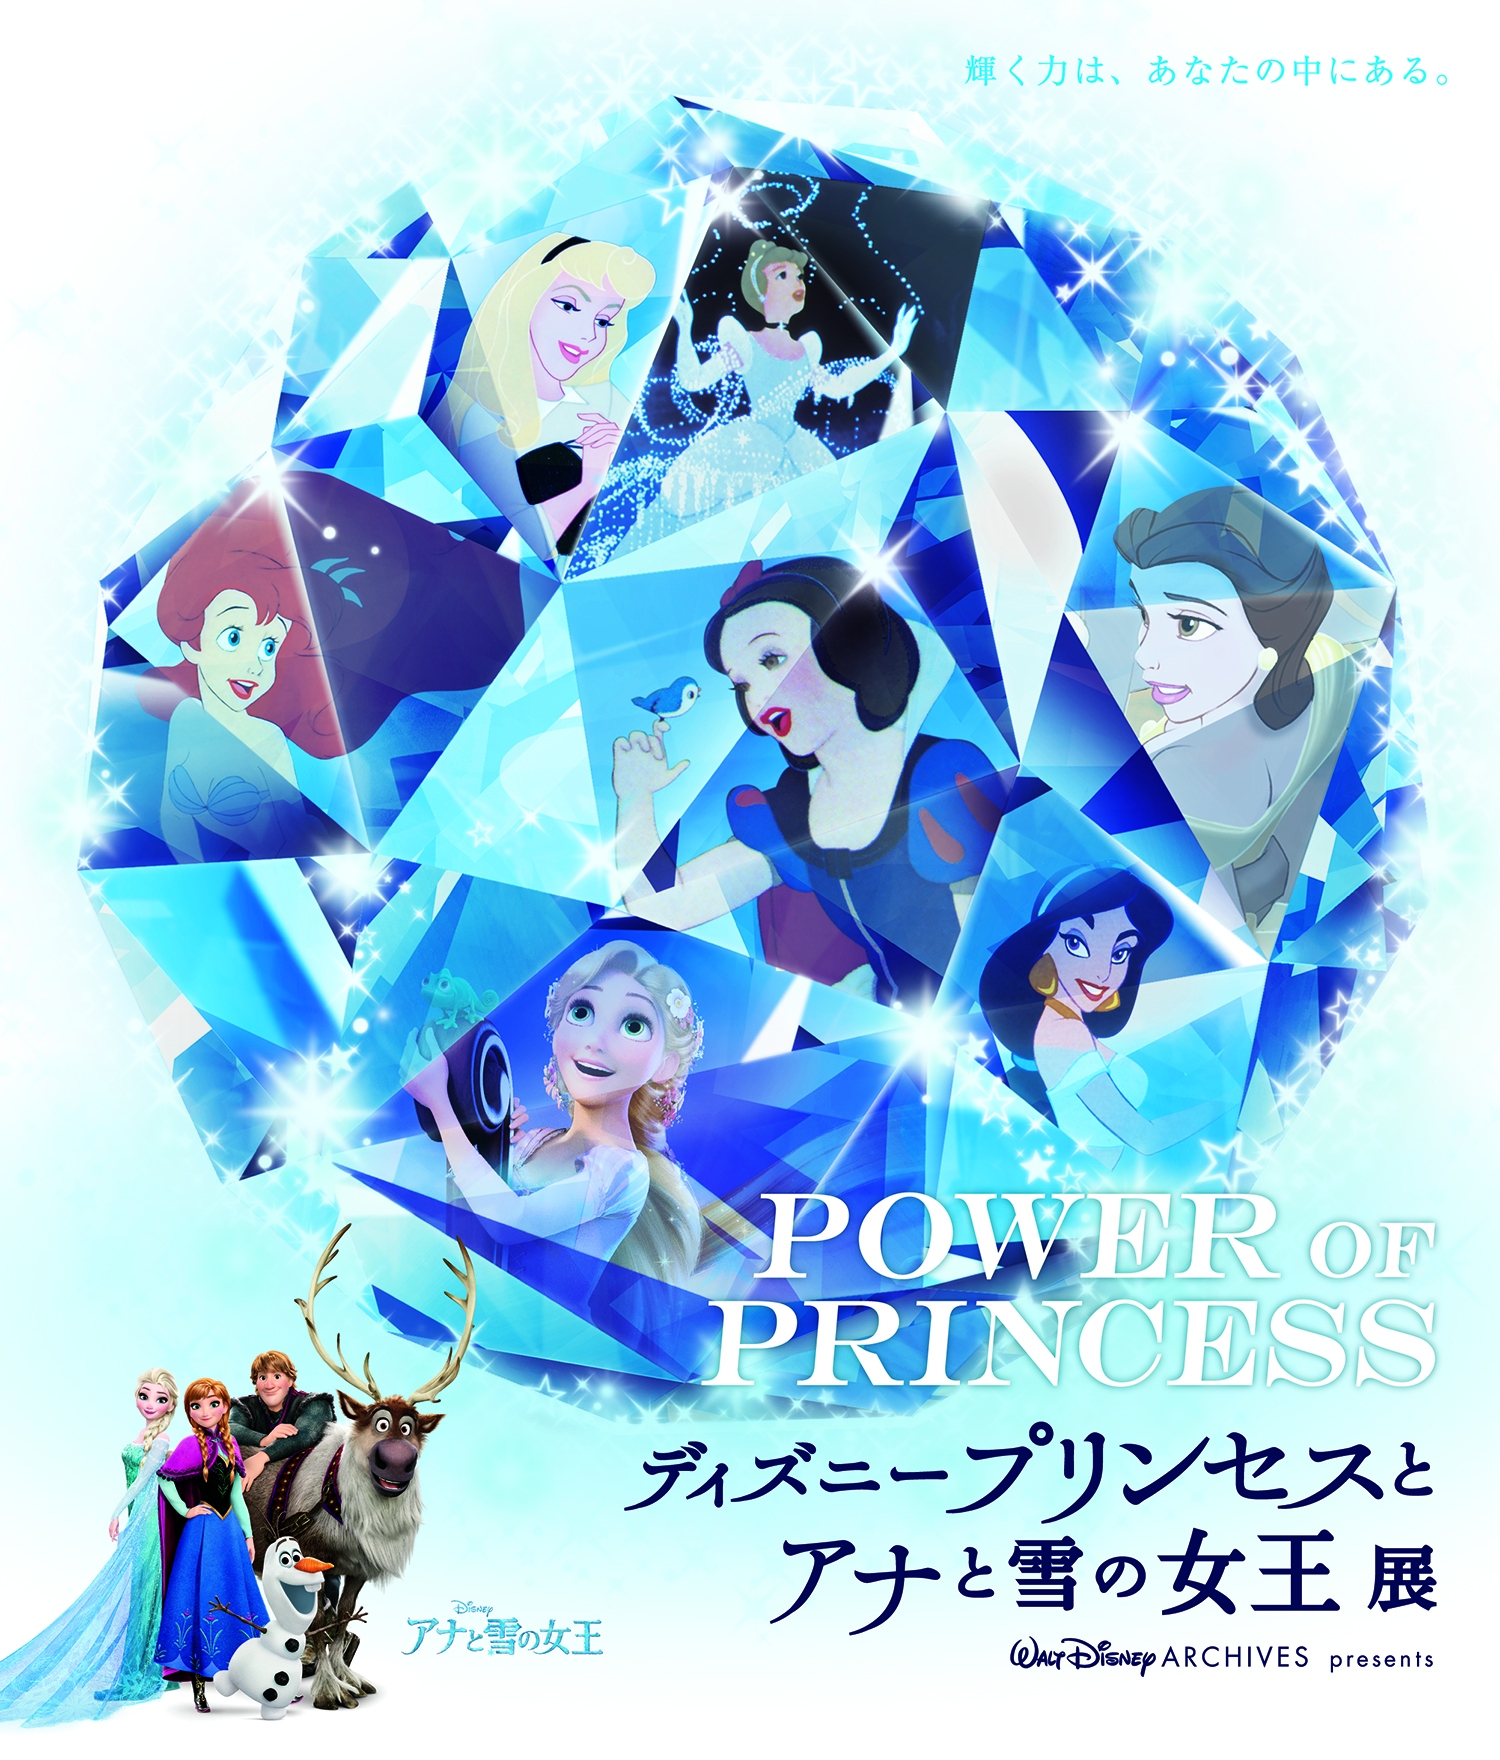 東京 大阪 名古屋会場で累計来場者数15万人突破 ディズニーの描く9人のプリンセスたちをテーマにした展覧会 東海テレビ放送のプレスリリース